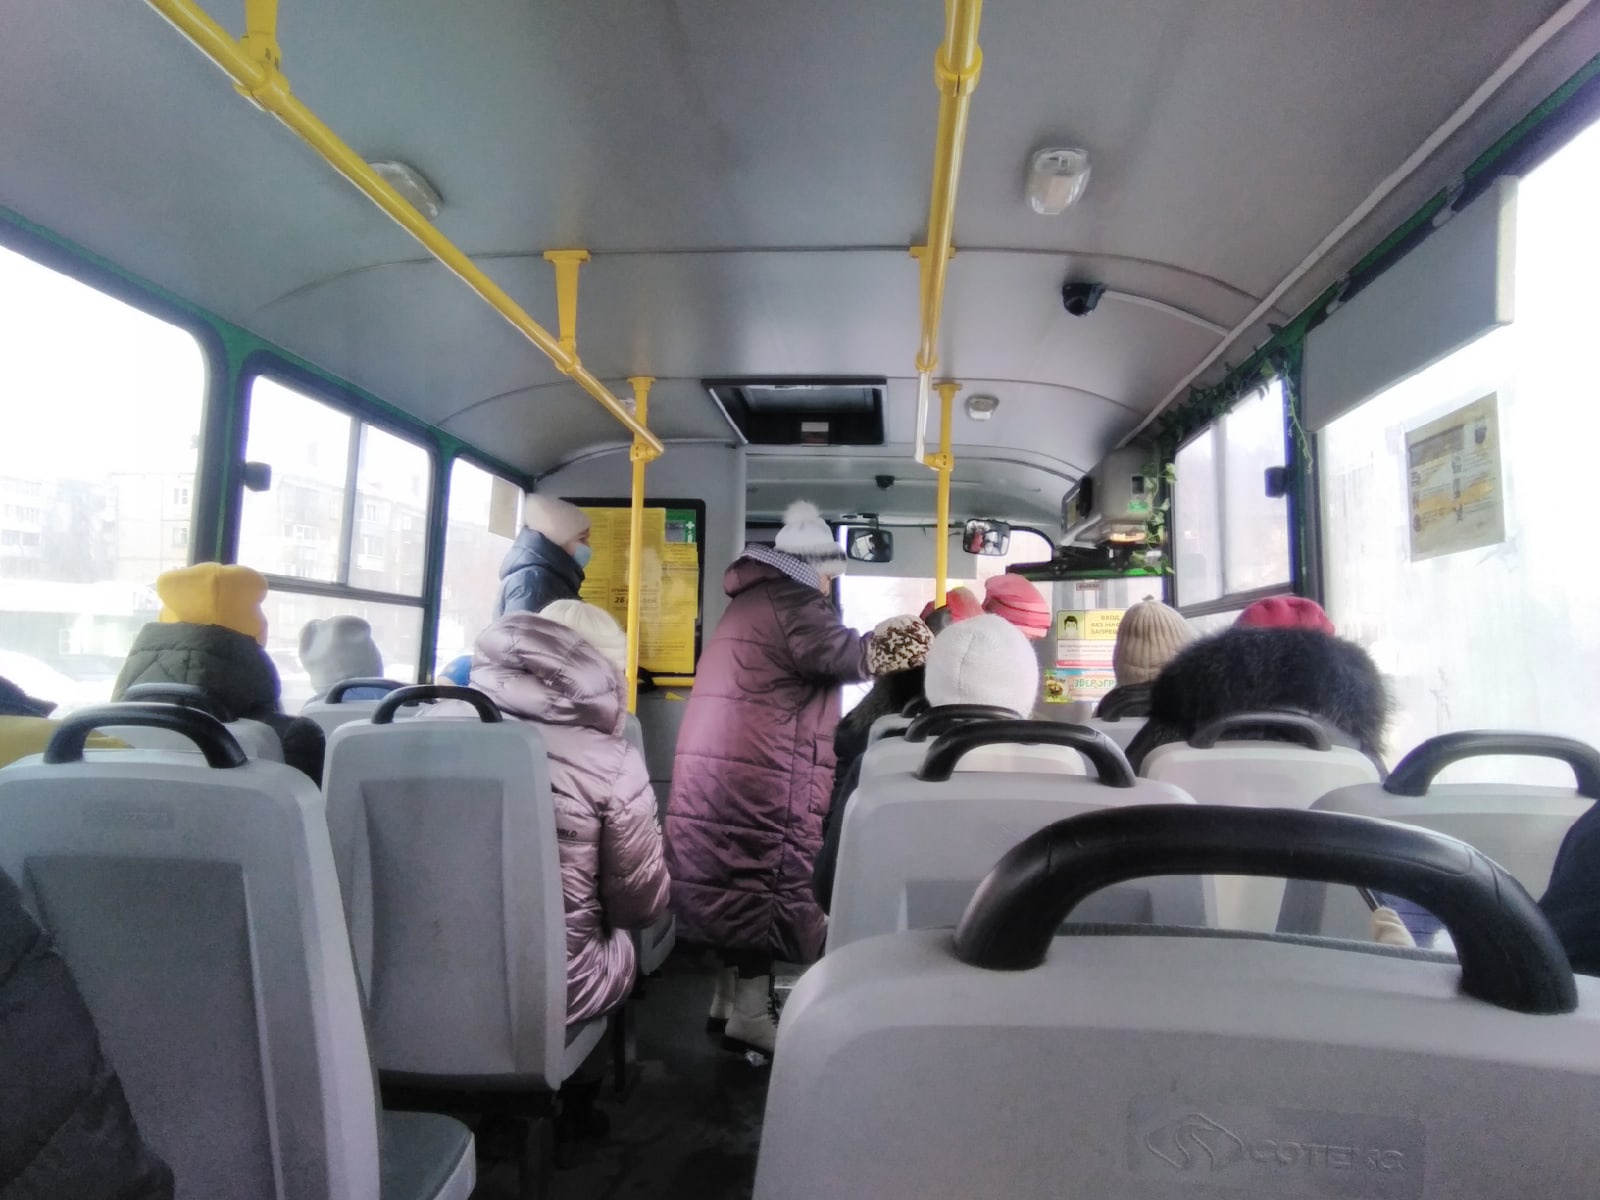 Автобусные билеты в Кирове уменьшились: ждать ли возвращения привычных размеров?